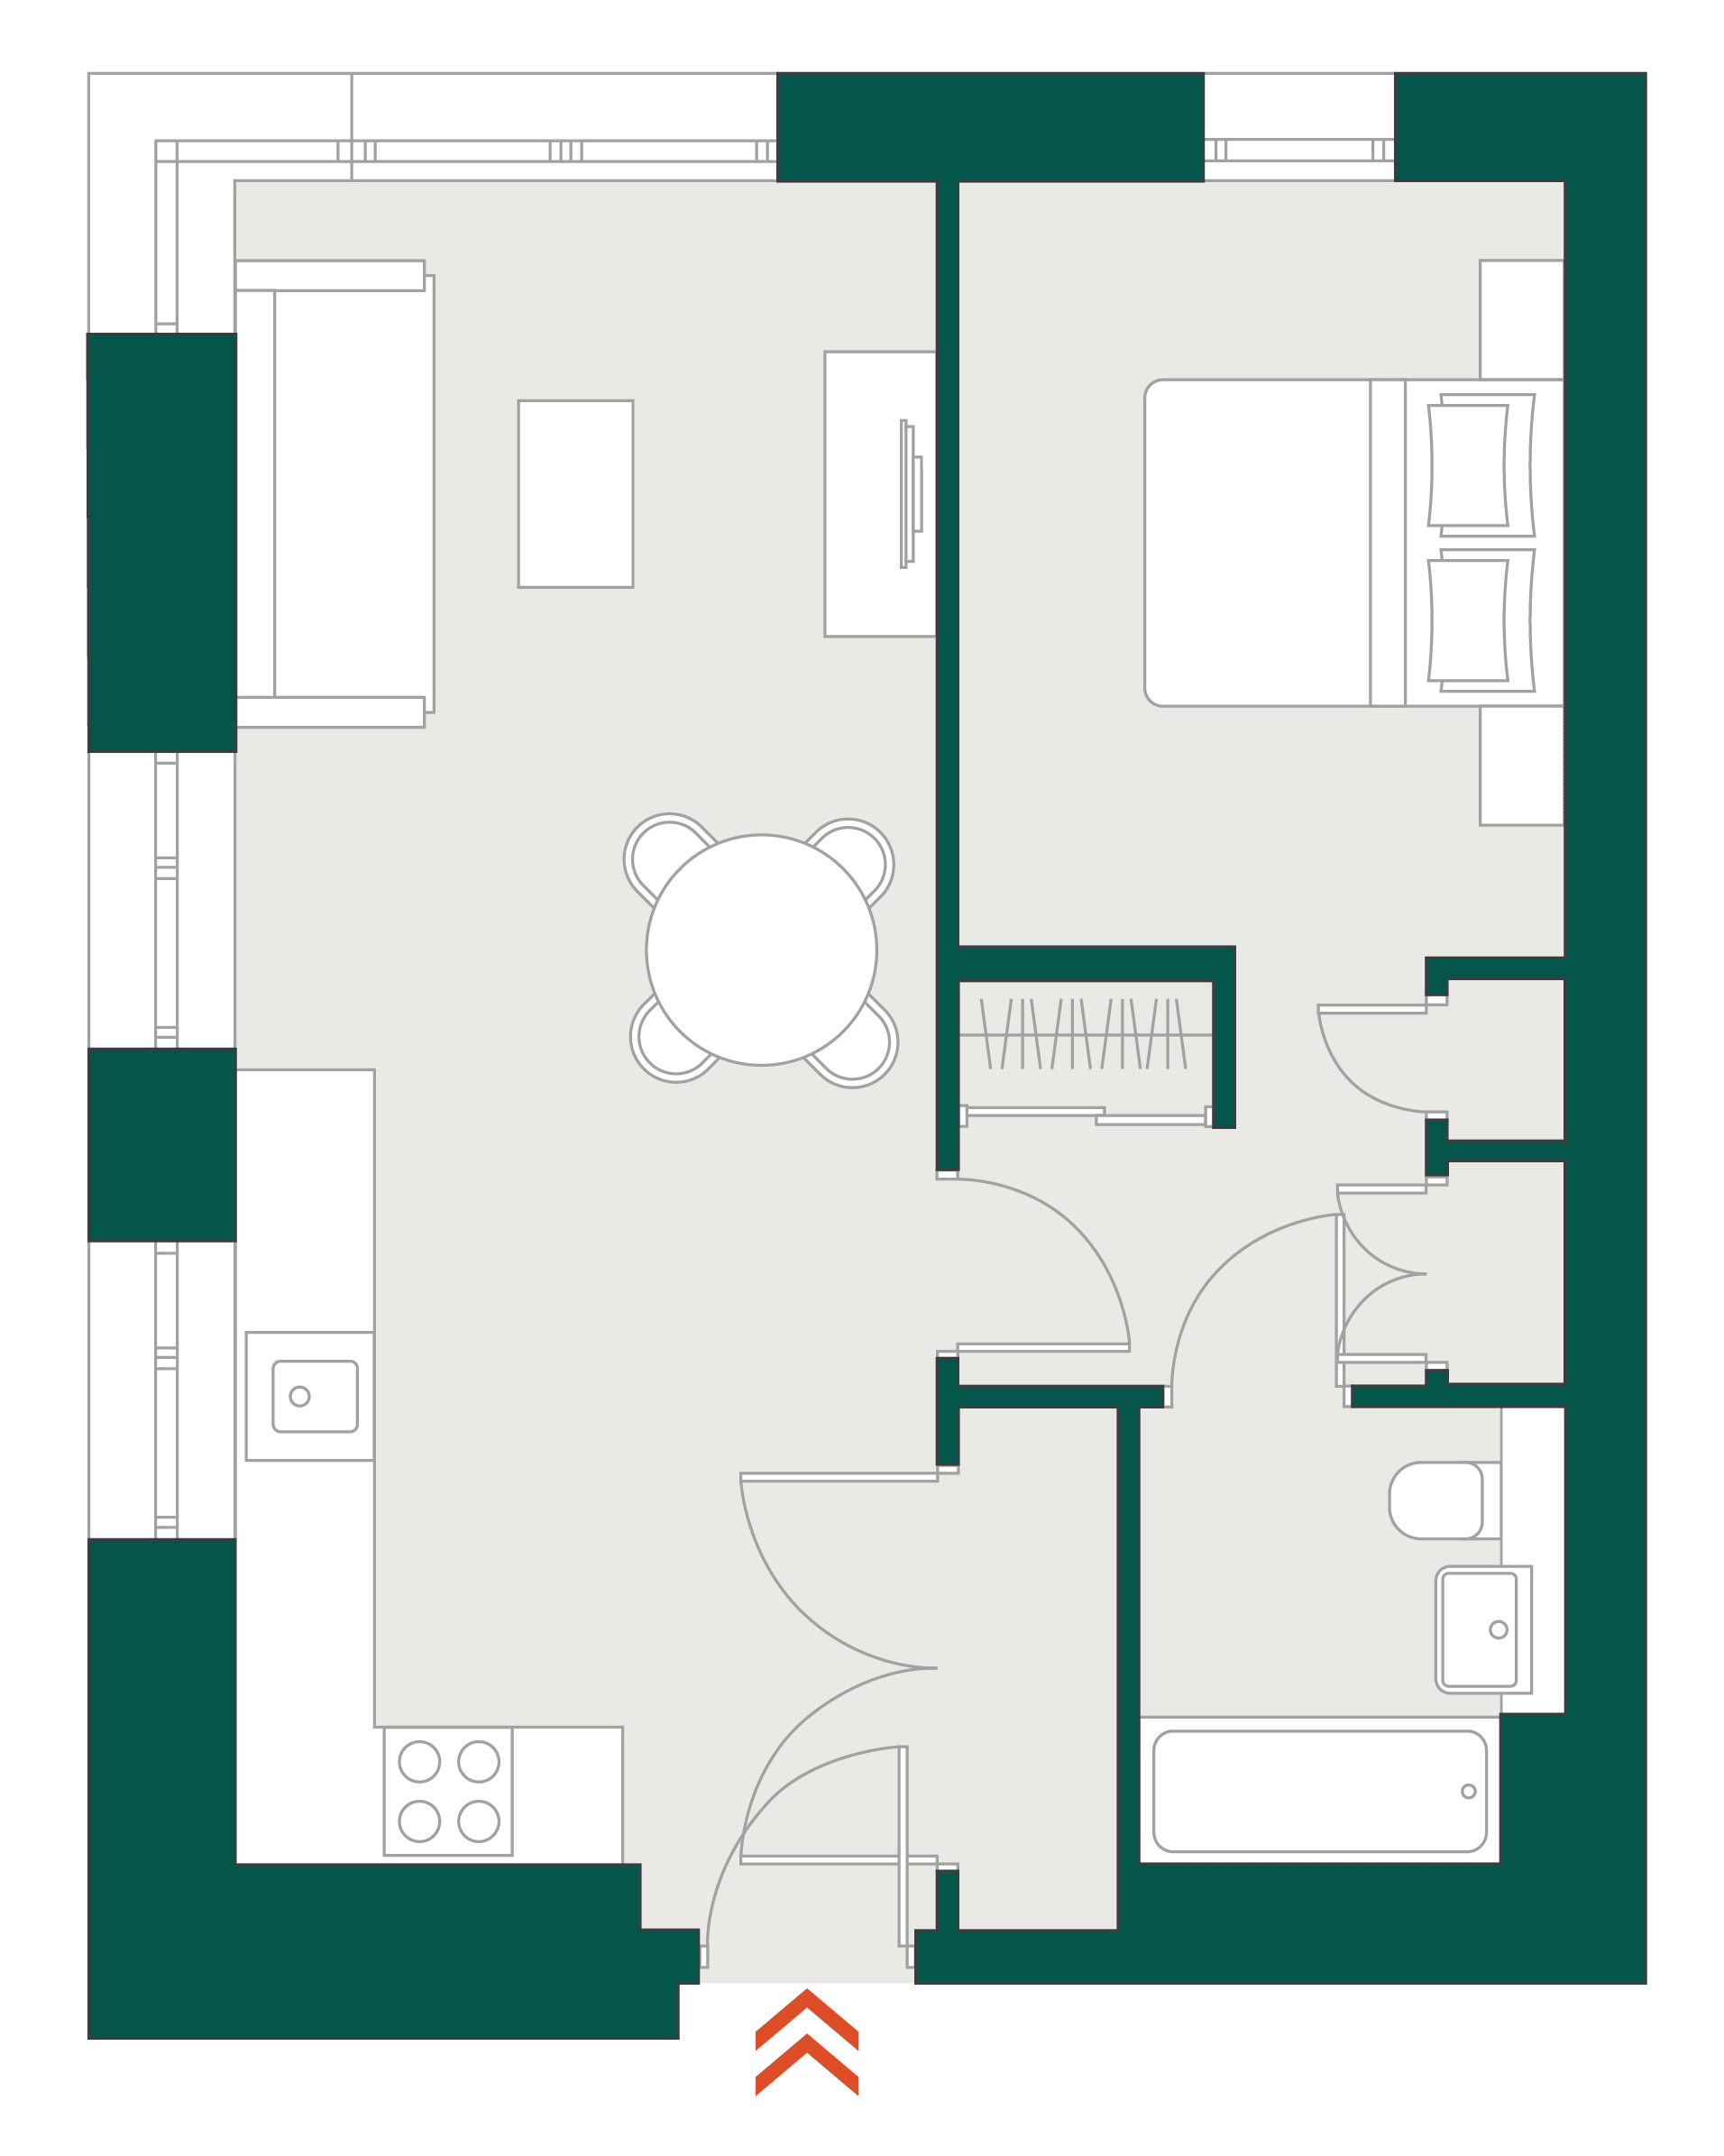 Blackhorse Mills 1 Bedroom WYG & floor plan typical floor plan